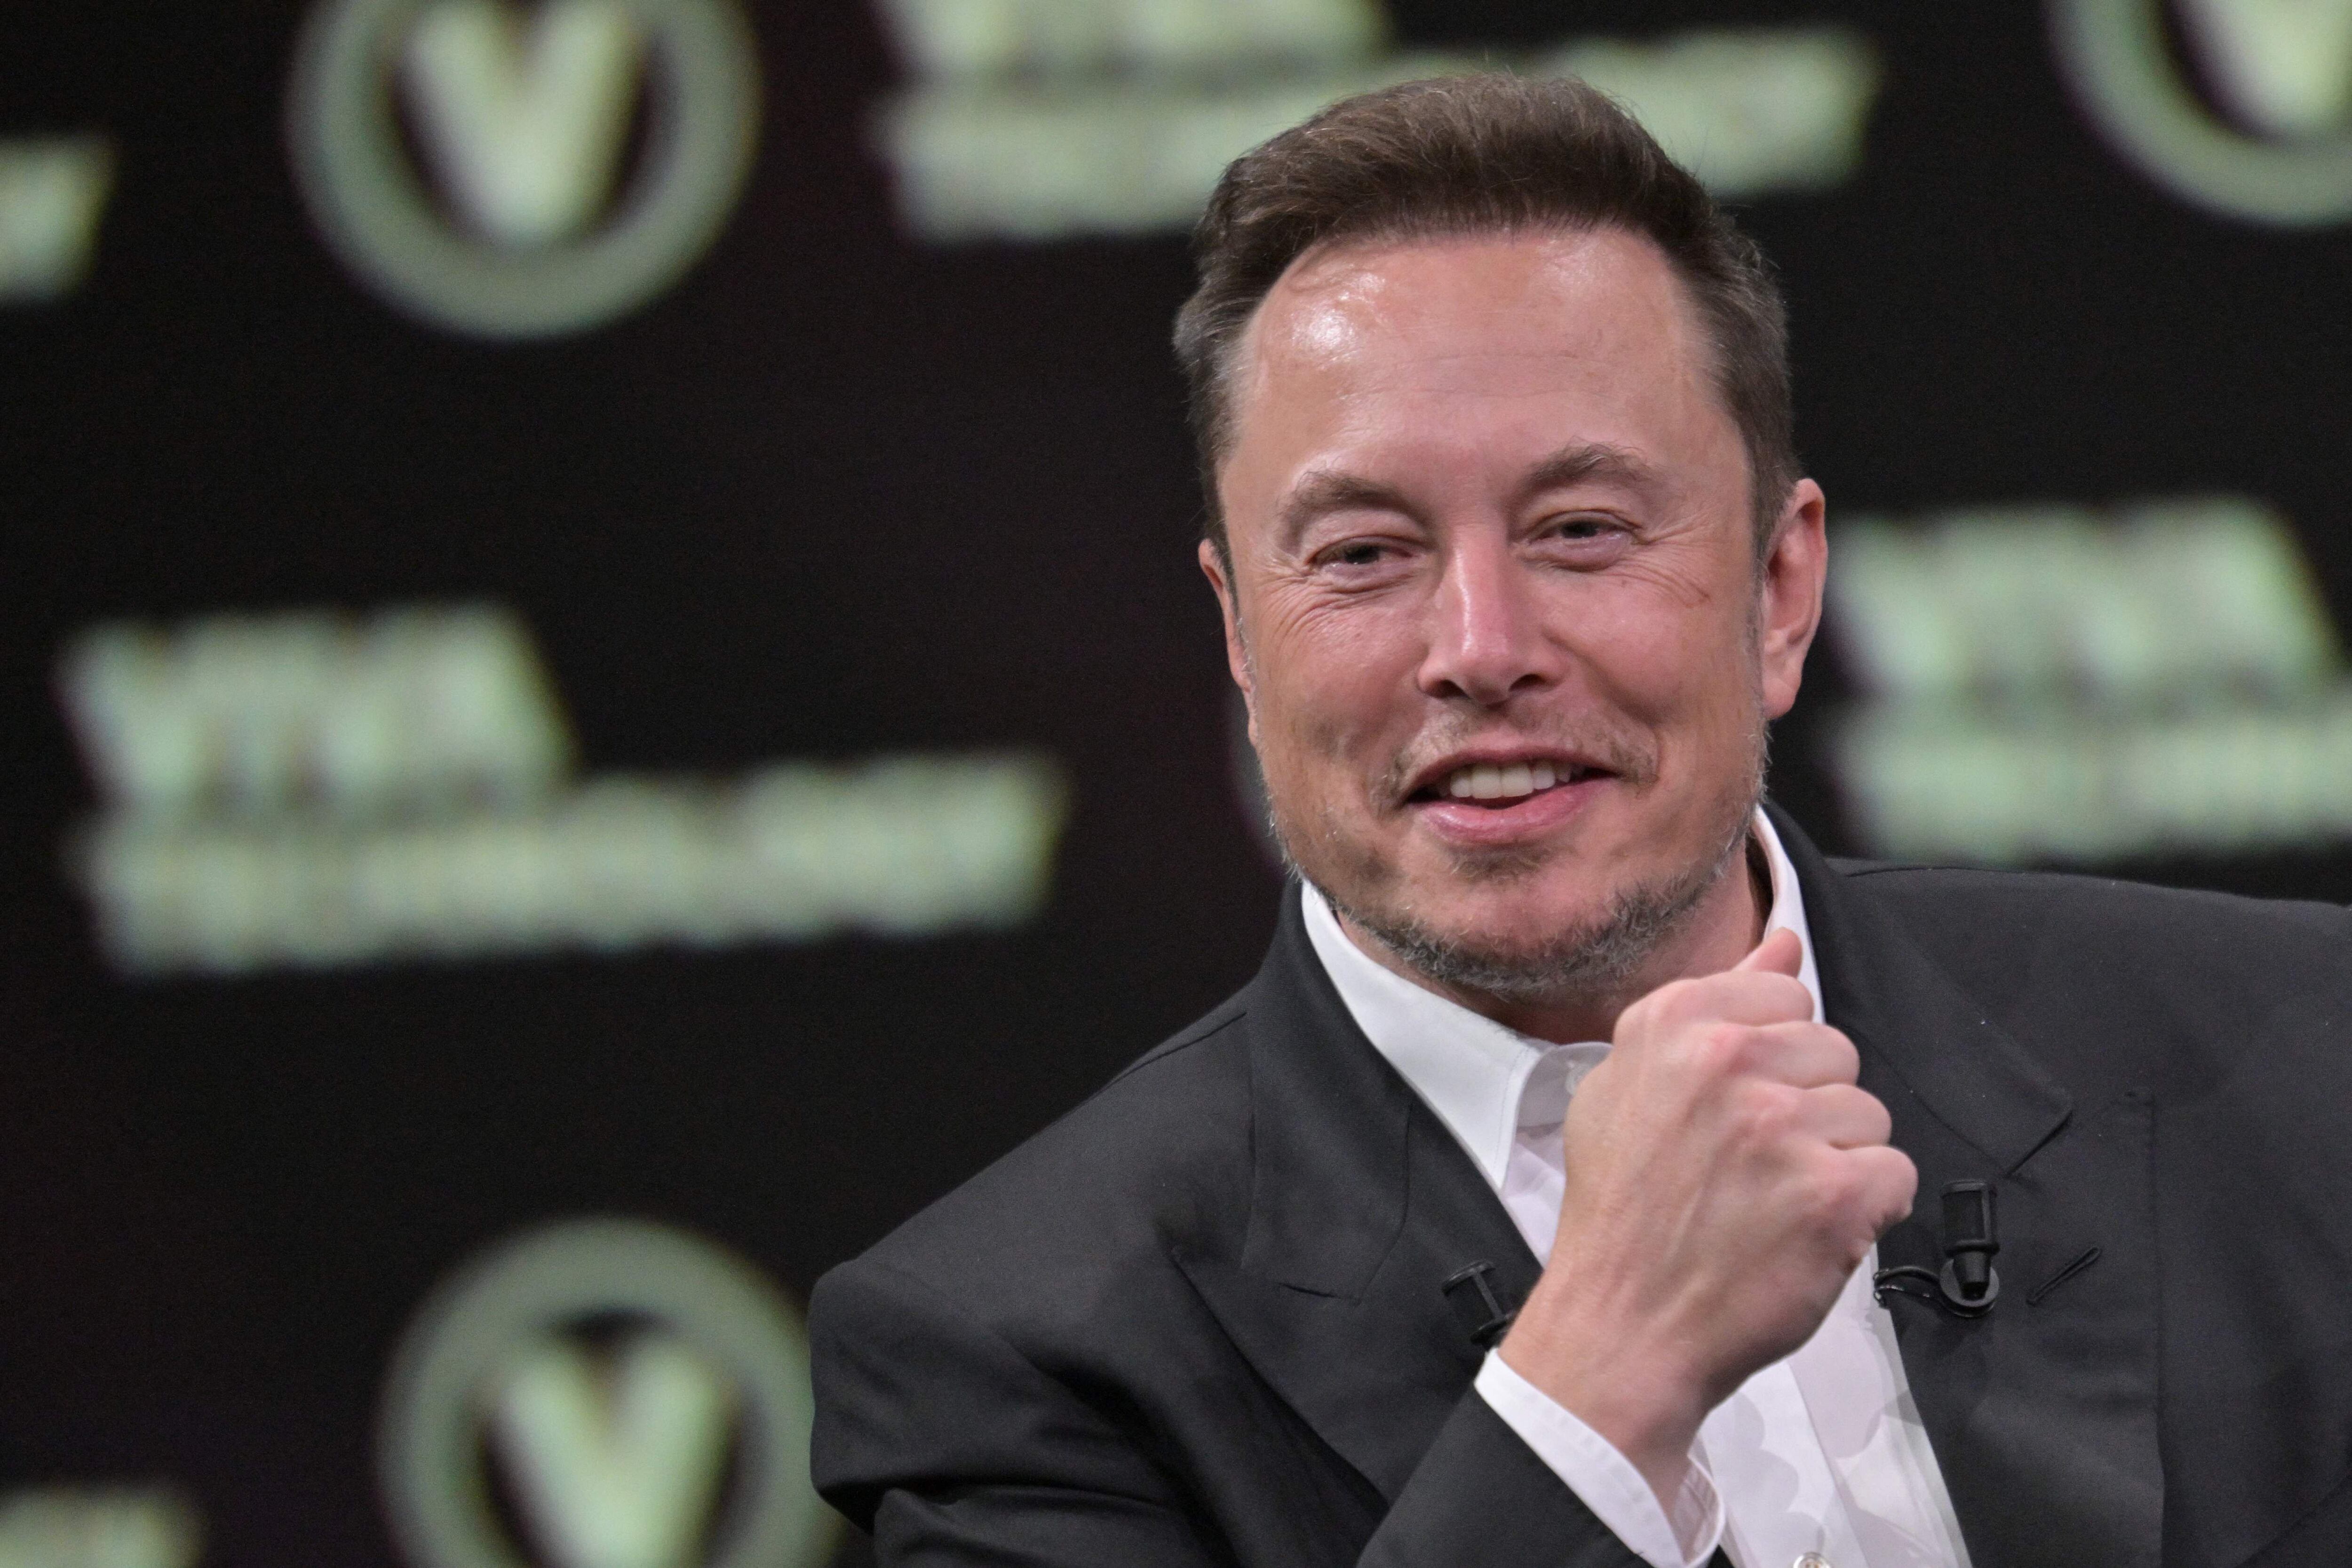 “Efectuamos un análisis en profundidad y tomamos la decisión de reducir nuestros efectivos en más de 10% a nivel mundial”, sostuvo Elon Musk. (Foto: Alain JOCARD / AFP)